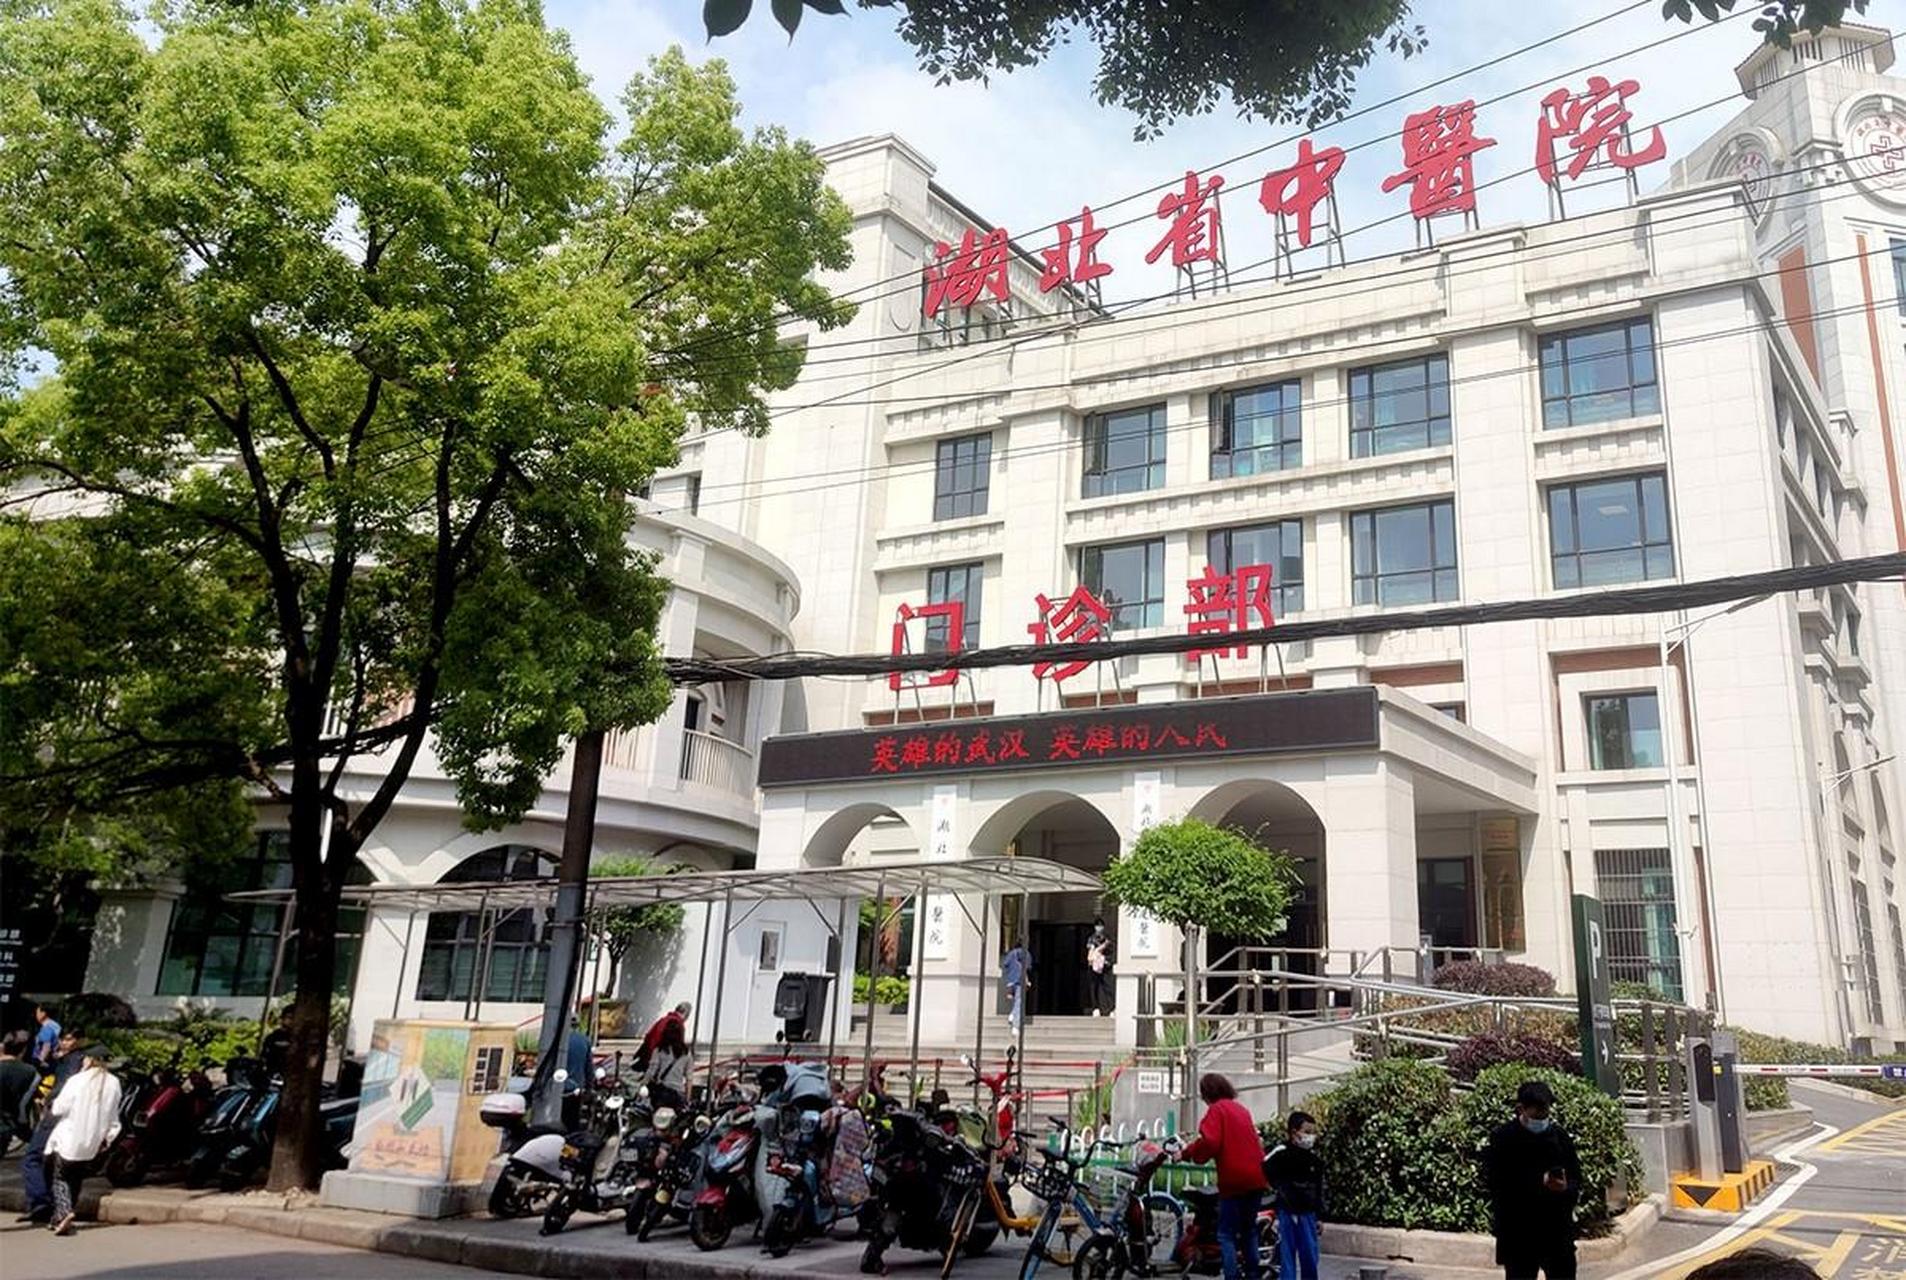 湖北省中医院位于武汉市武昌区胭脂路花园山4号,粮道街和昙华林之间